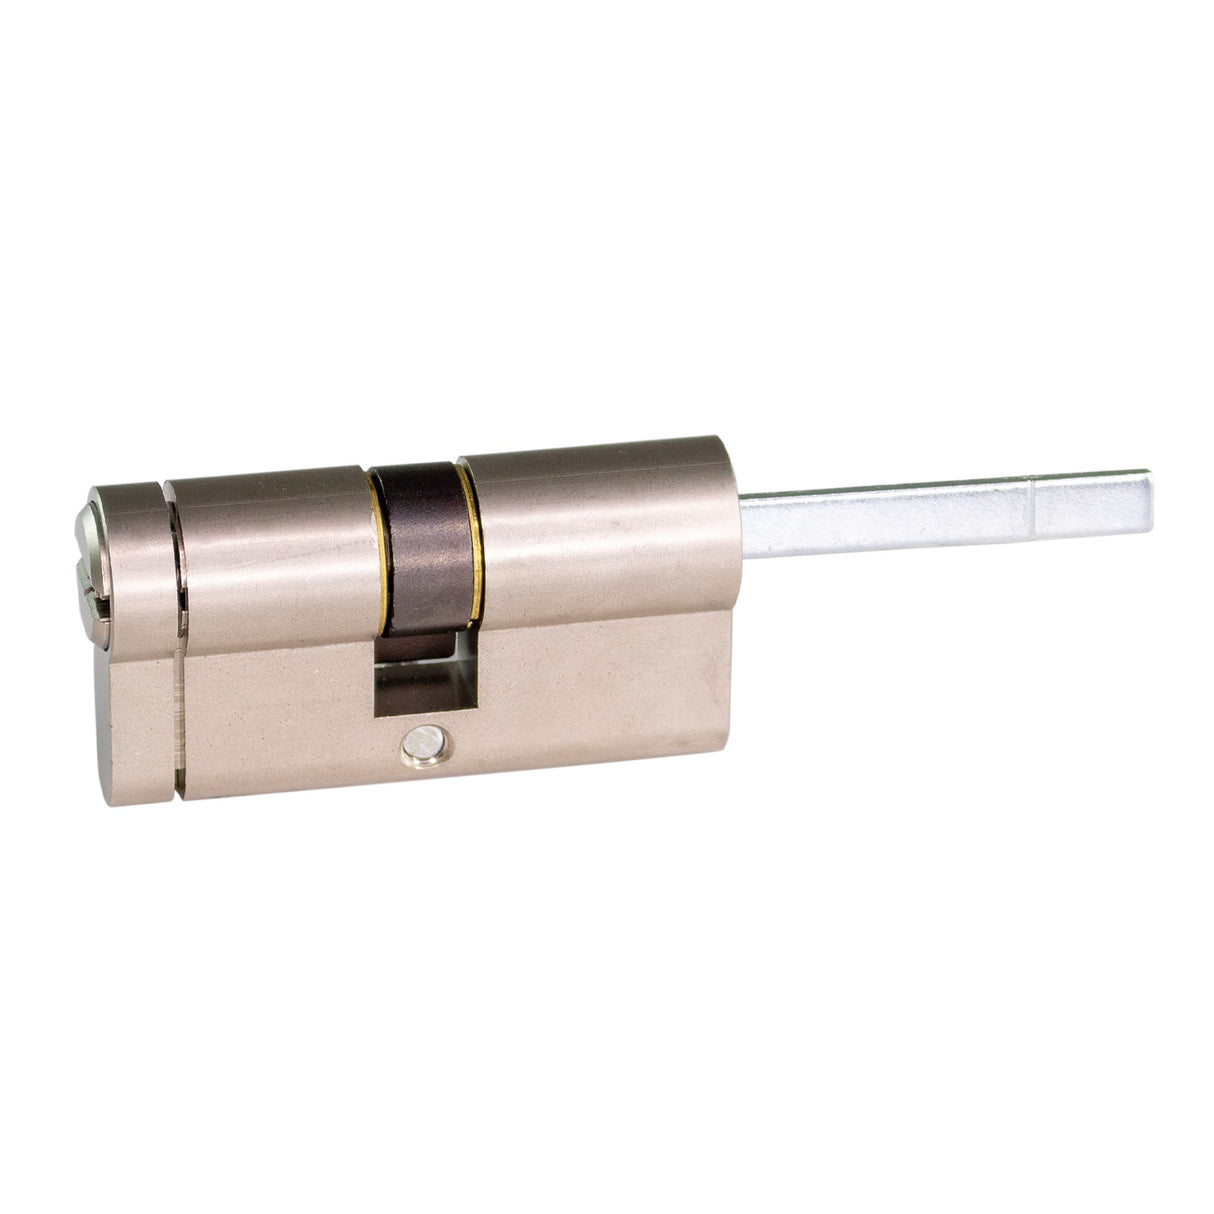 Poly Control Lince CPlus cylinder, 30-30, D cam, nikkel finish, 5 nøgler